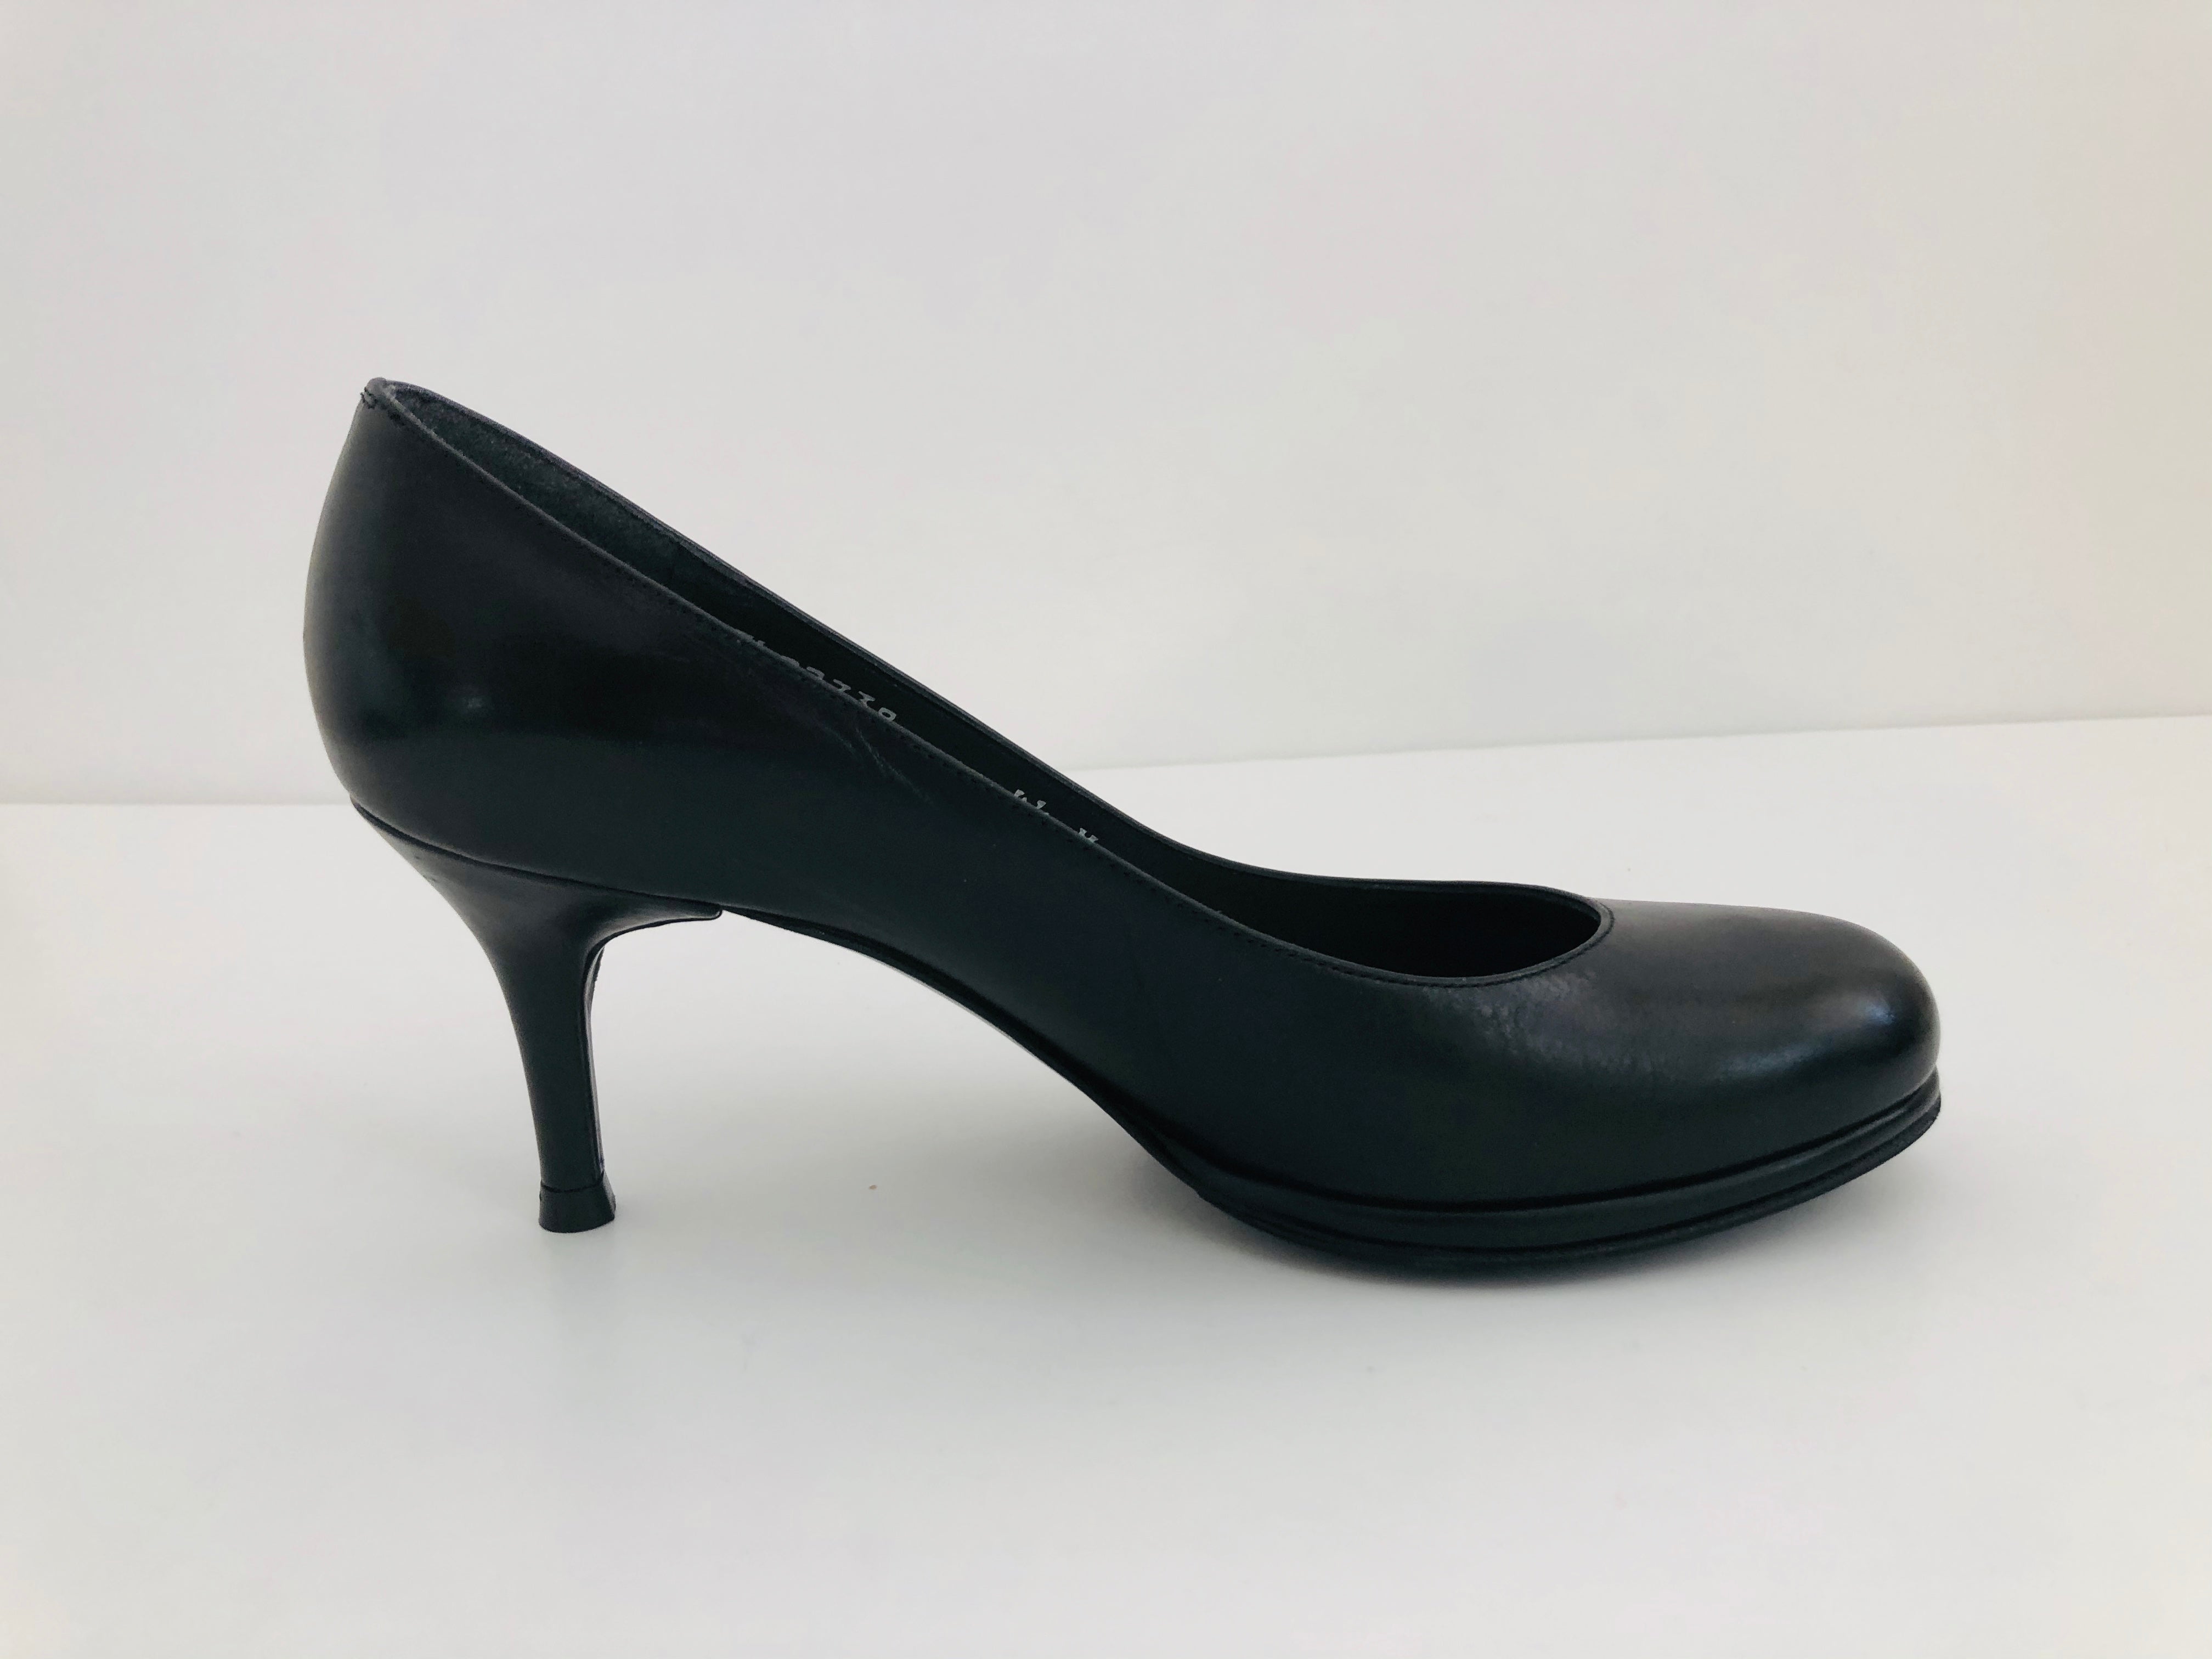 size 4.5 heels